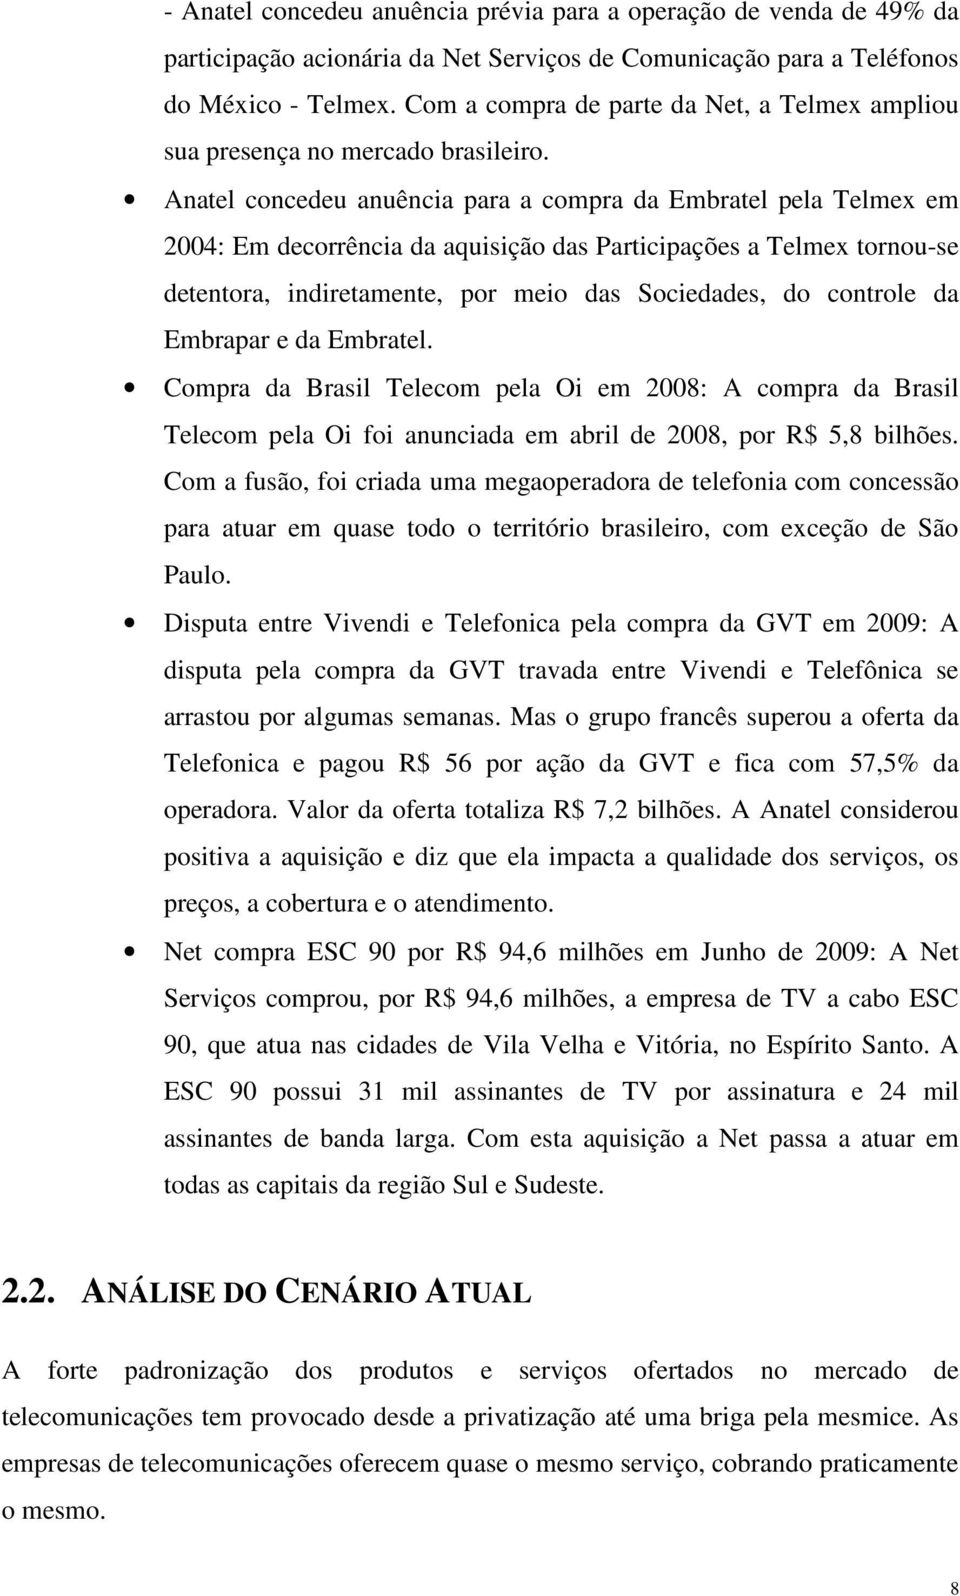 Anatel concedeu anuência para a compra da Embratel pela Telmex em 2004: Em decorrência da aquisição das Participações a Telmex tornou-se detentora, indiretamente, por meio das Sociedades, do controle